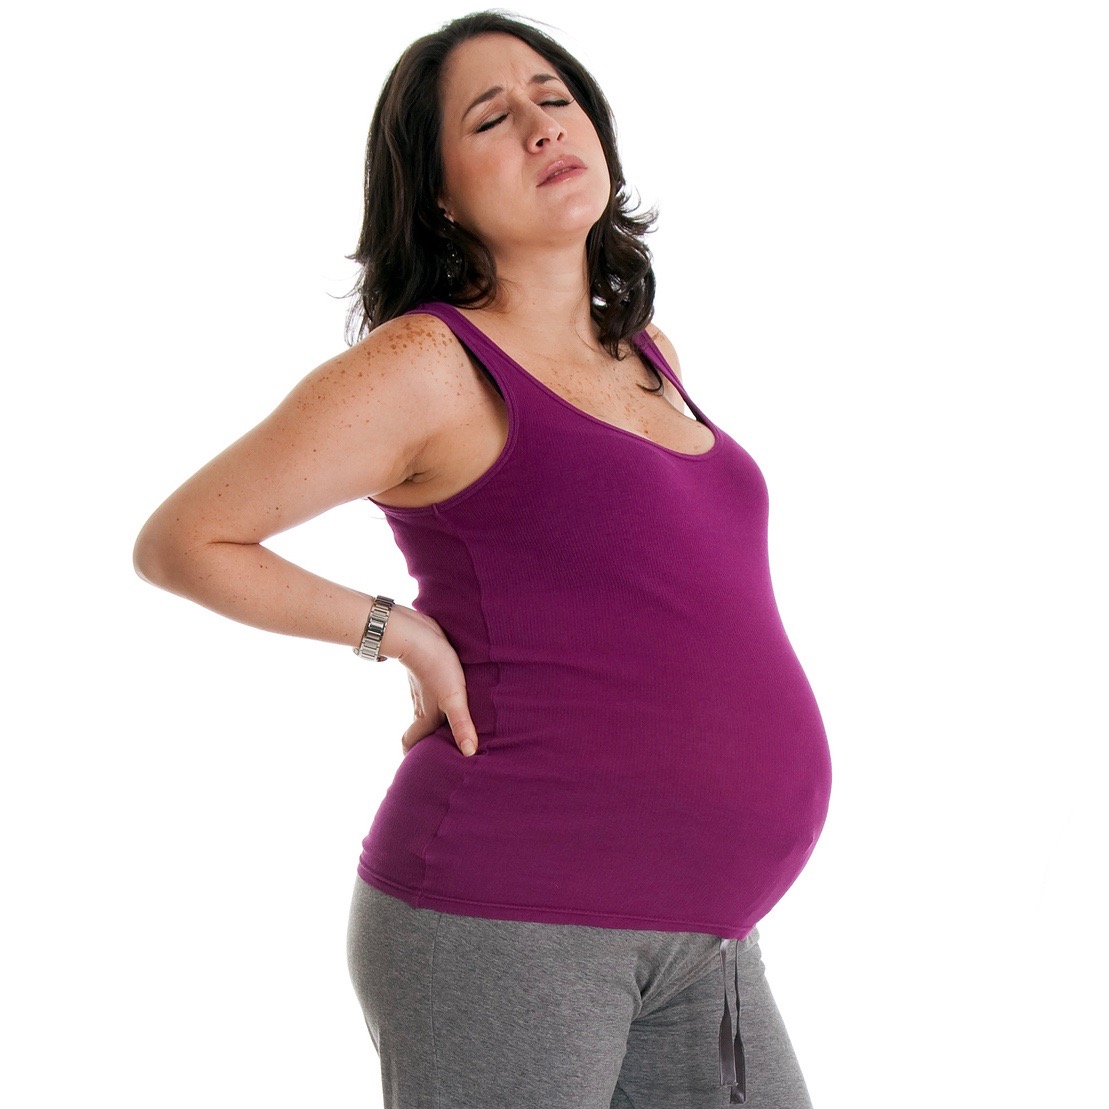 Dolores en el embarazo: ¿normales o señales de alerta?